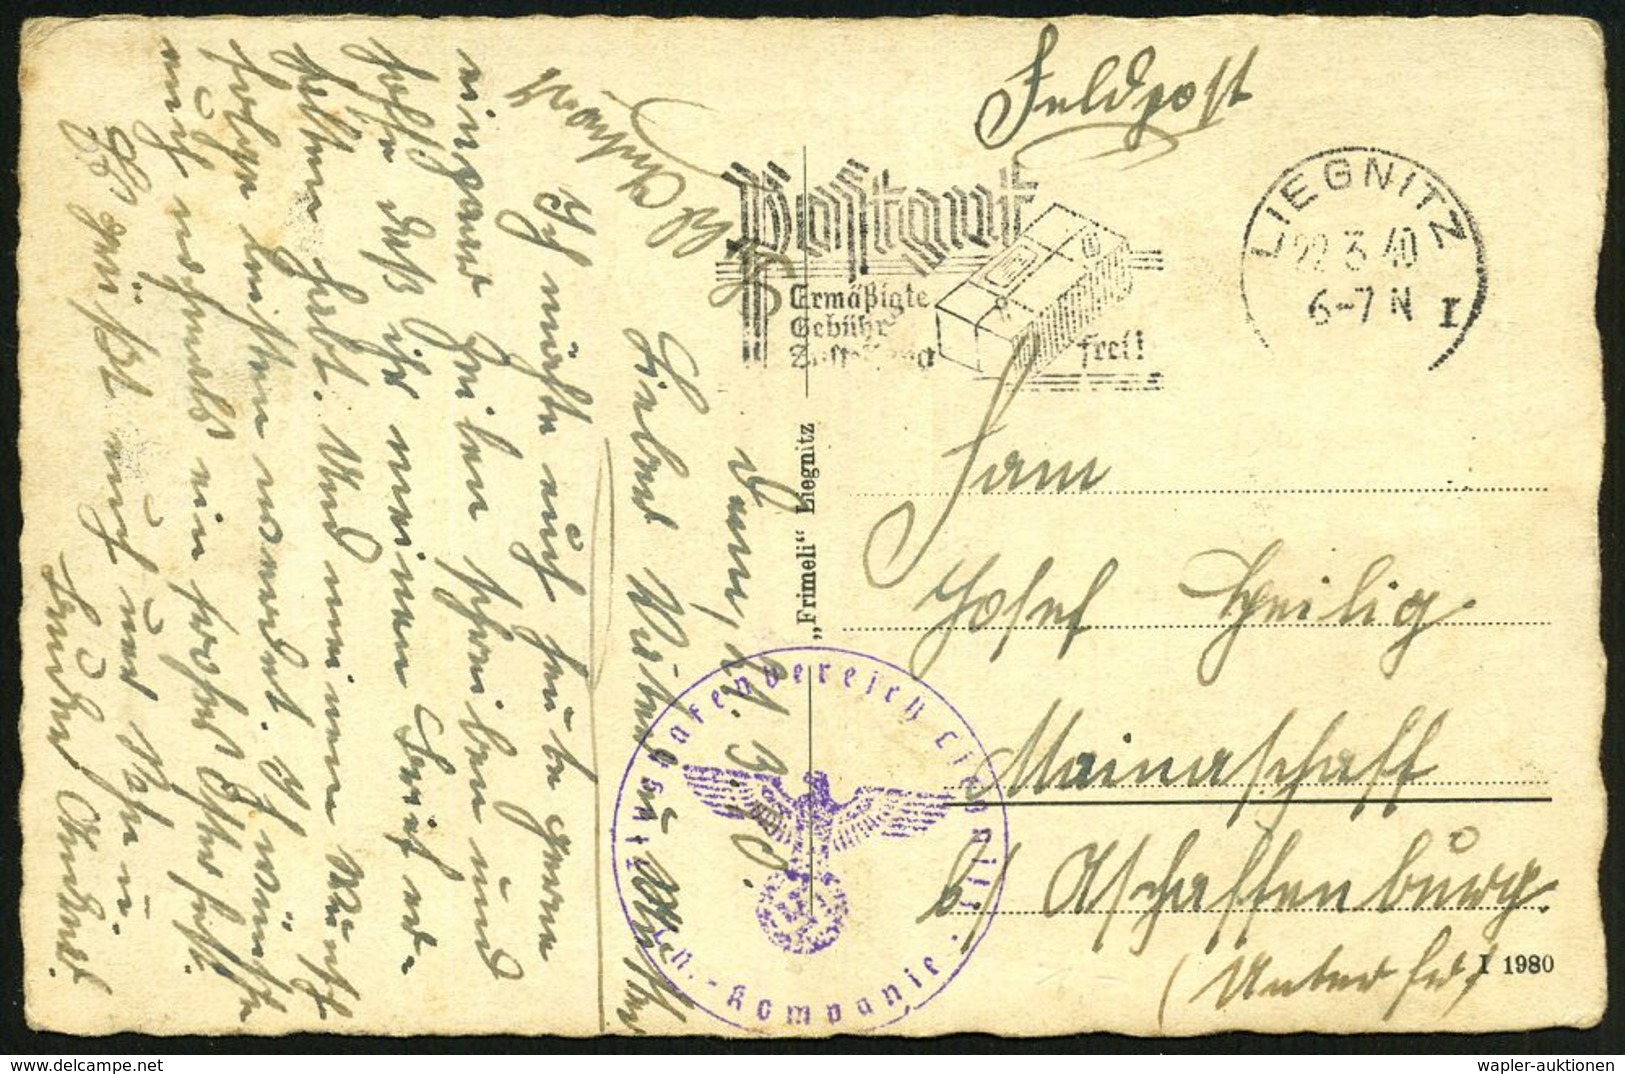 LIEGNITZ/ I/ Postgut/ Ermäßigte/ Gebühr/ Zustellung Frei! 1940 (22.3.) MWSt + Viol. 1K-HdN: Flughafenbereich Liegnitz/ L - Avions